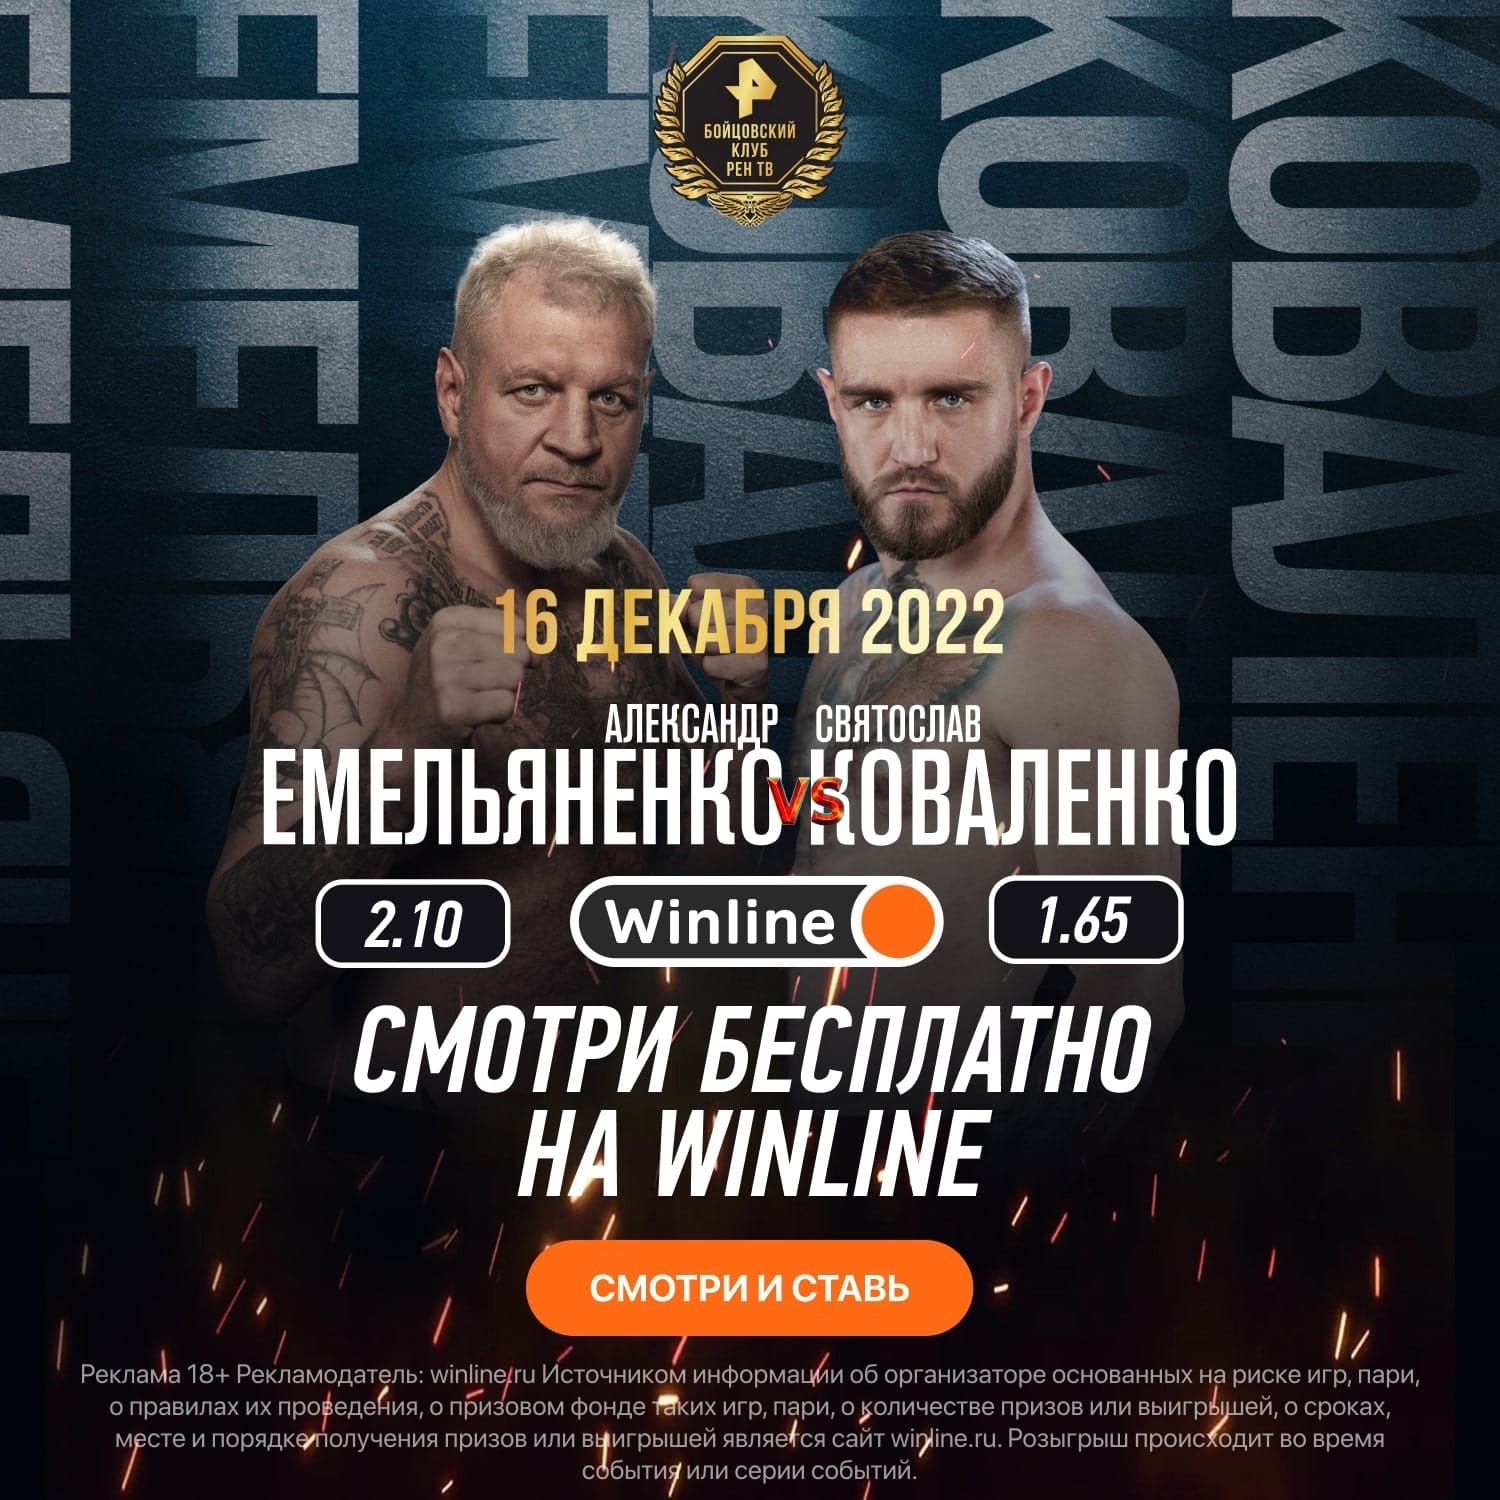 Winline покажет трансляцию турнира с боем Емельяненко и Коваленко